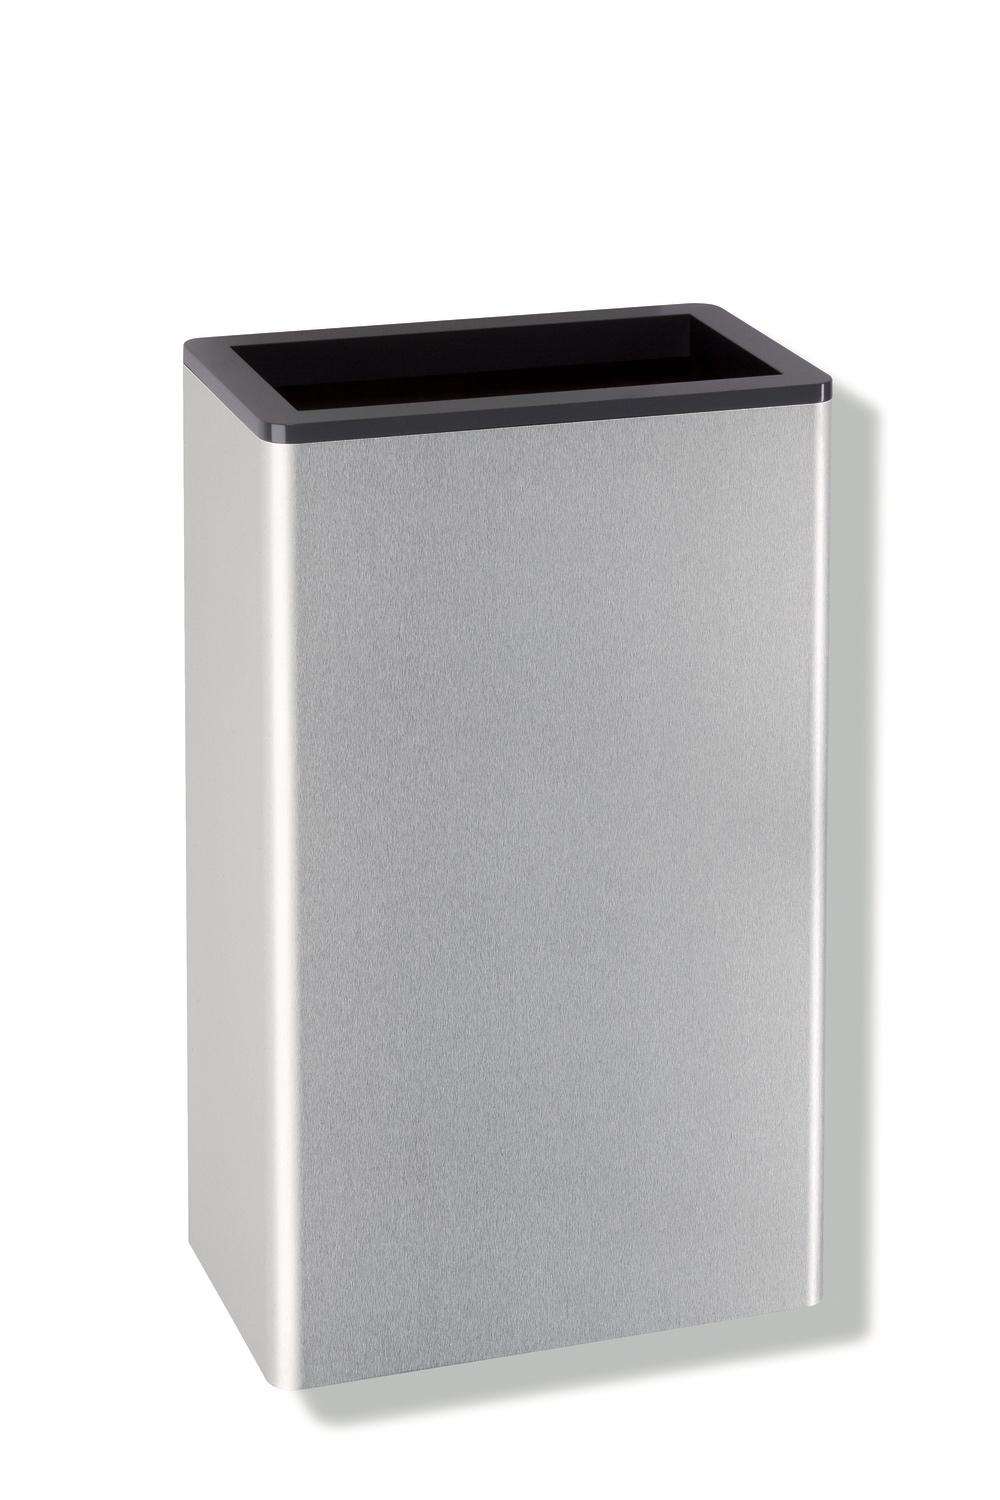 HEWI Papierabfallbehälter „Serie 805“ 18,5 cm